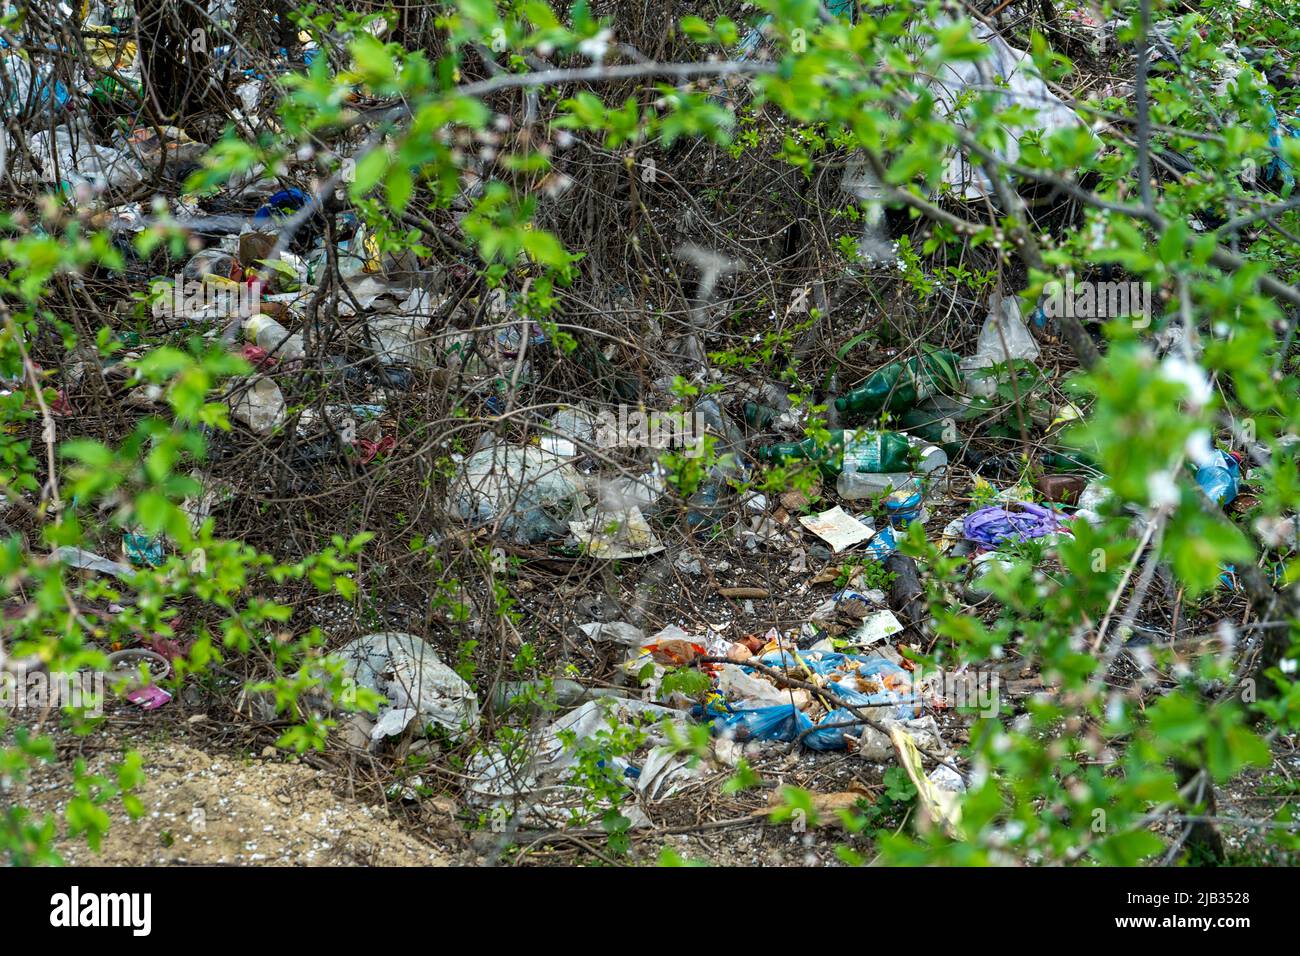 Rifiuti di plastica sparsi in una foresta verde tra gli arbusti primaverili, inquinamento ambientale Foto Stock